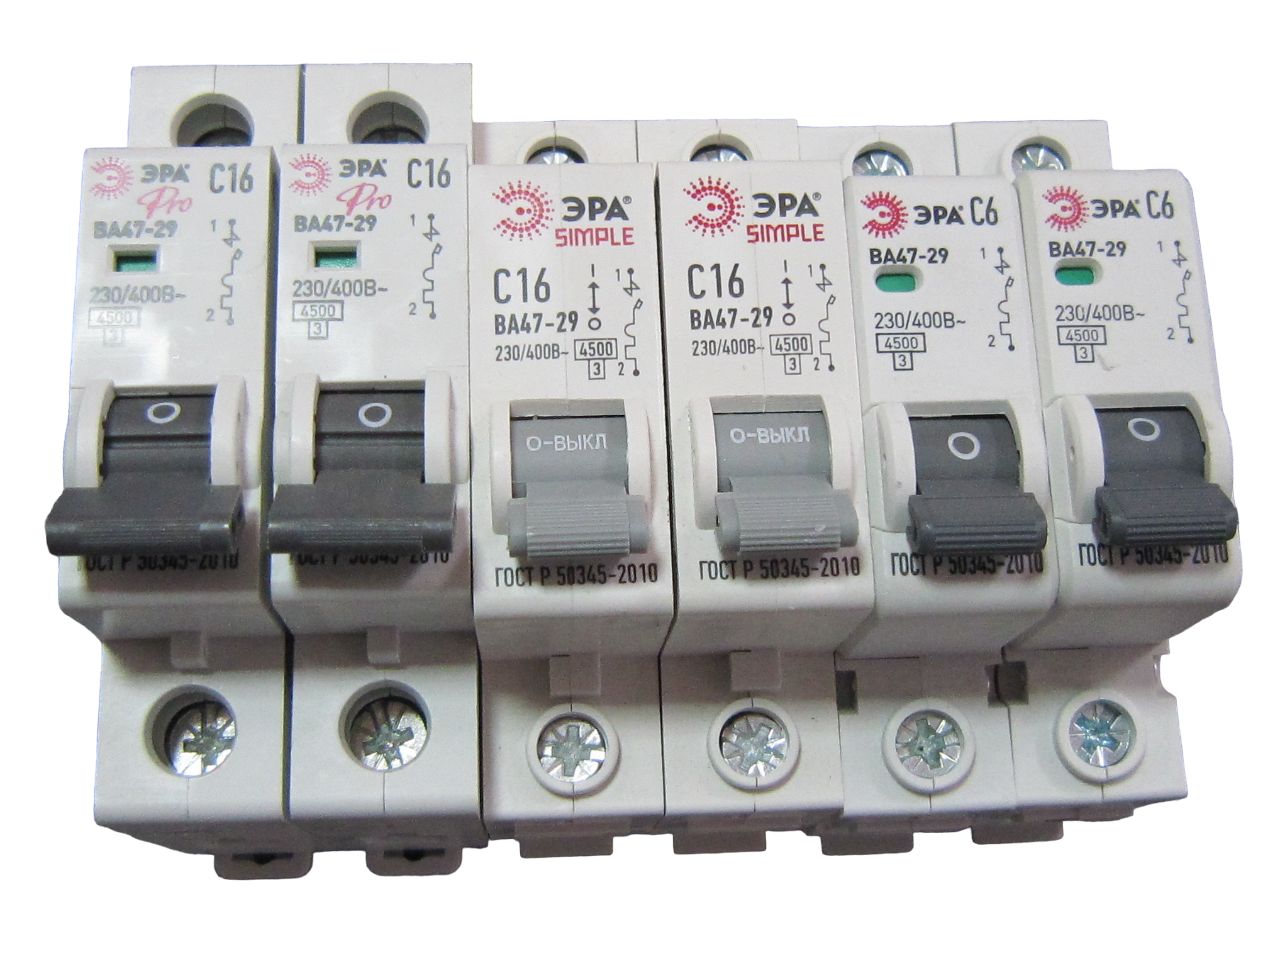 Автоматический выключатель SMGMI-100 3p 250-400a. 2888217 Выключатель ва25-29 c. EKF автоматический выключатель ва-99мl 100 25a. Ва 47 88 80а. Автоматический выключатель эра